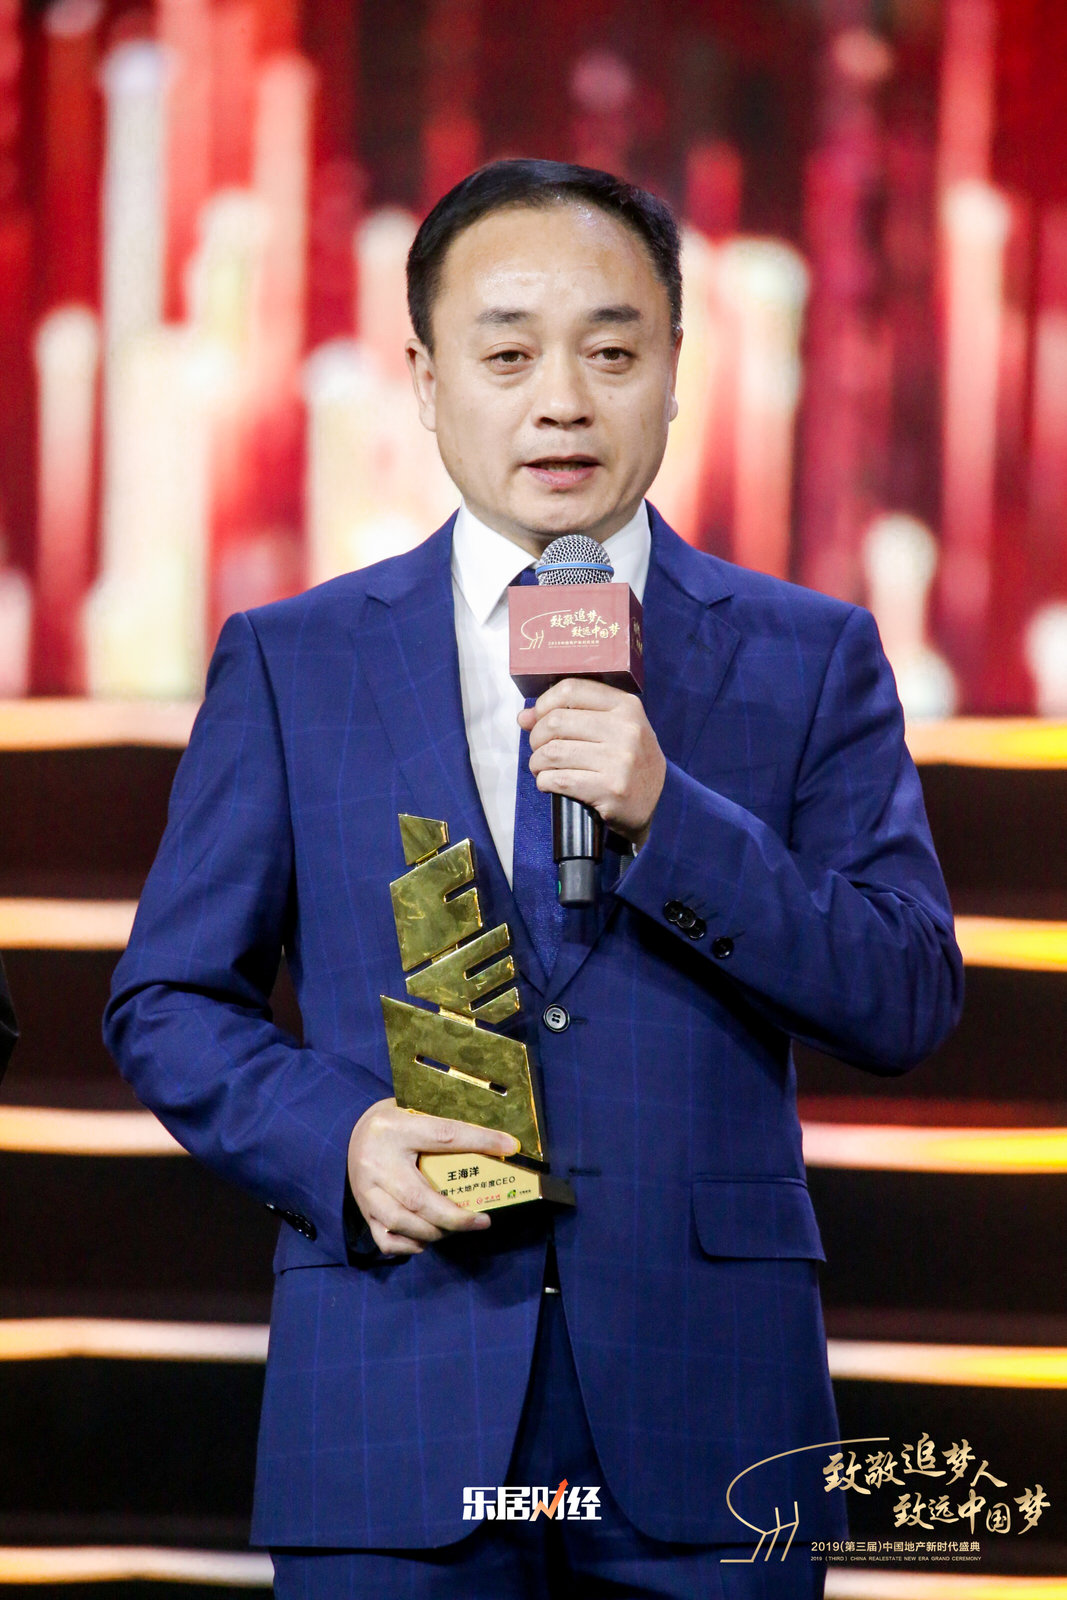 王凯受邀出席第34届中国电影金鸡奖闭幕式 干练帅气状态佳 - 360娱乐，你开心就好